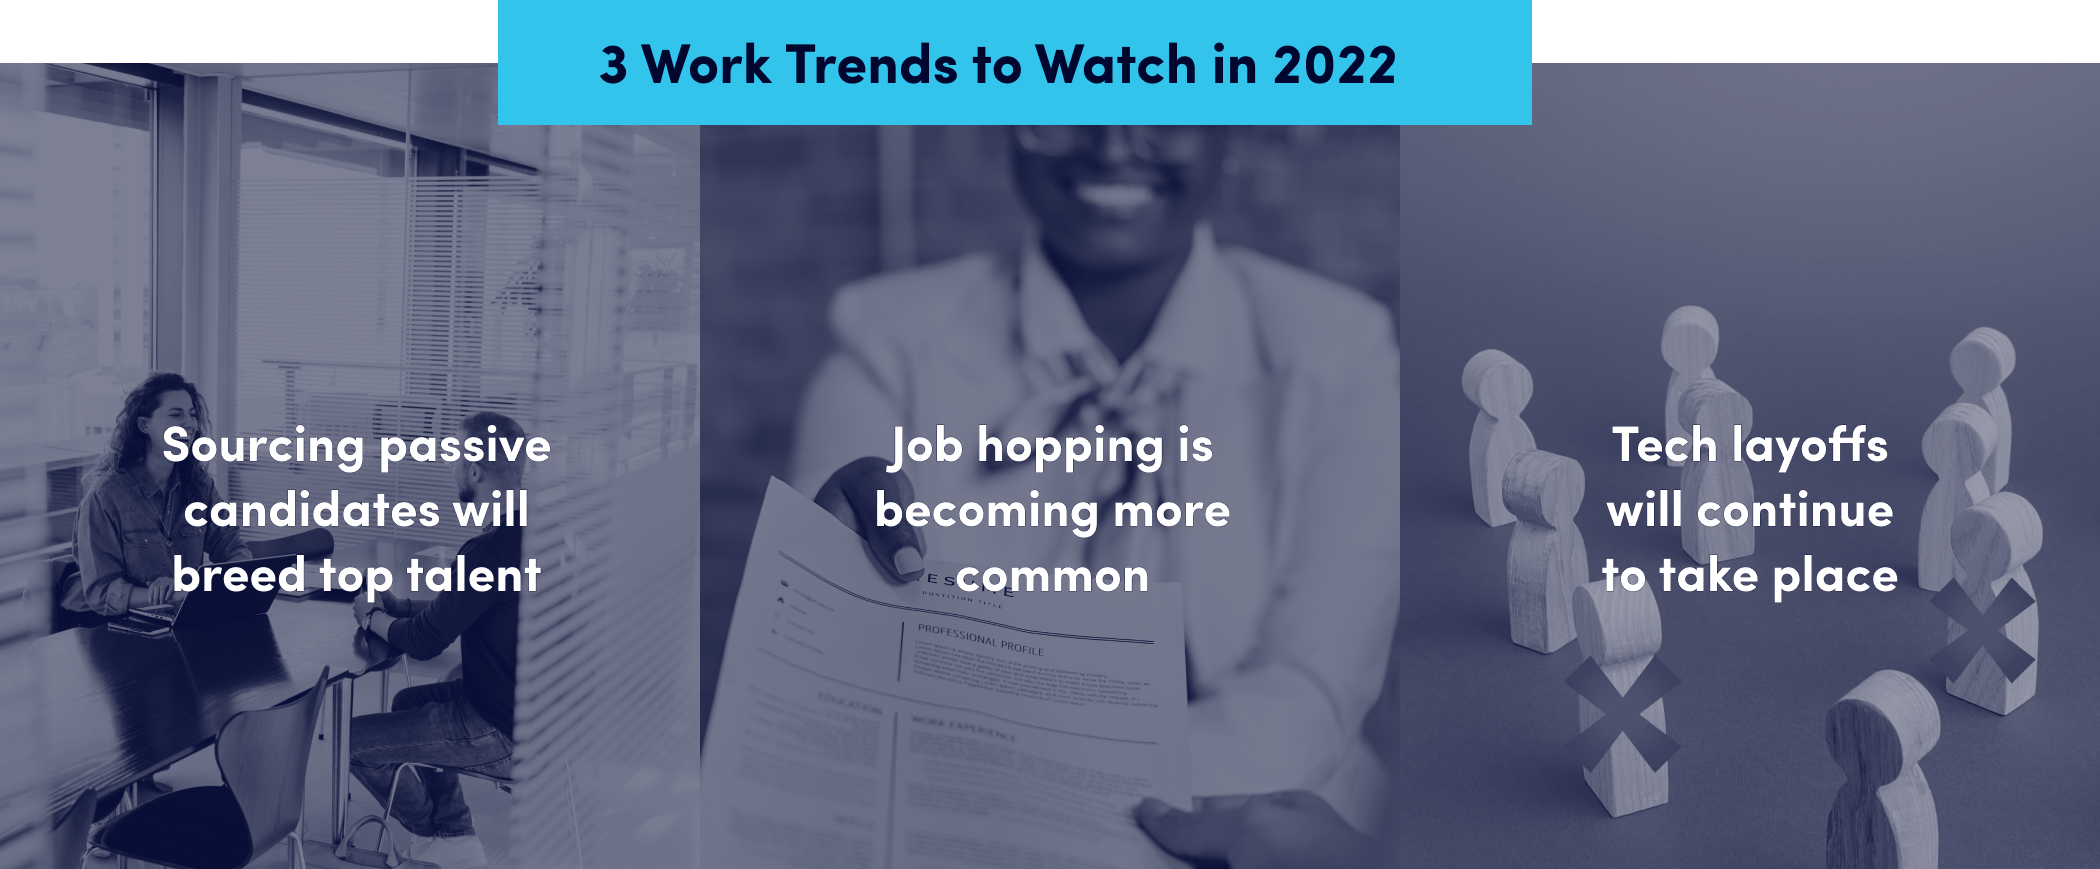 3 work trends 2022